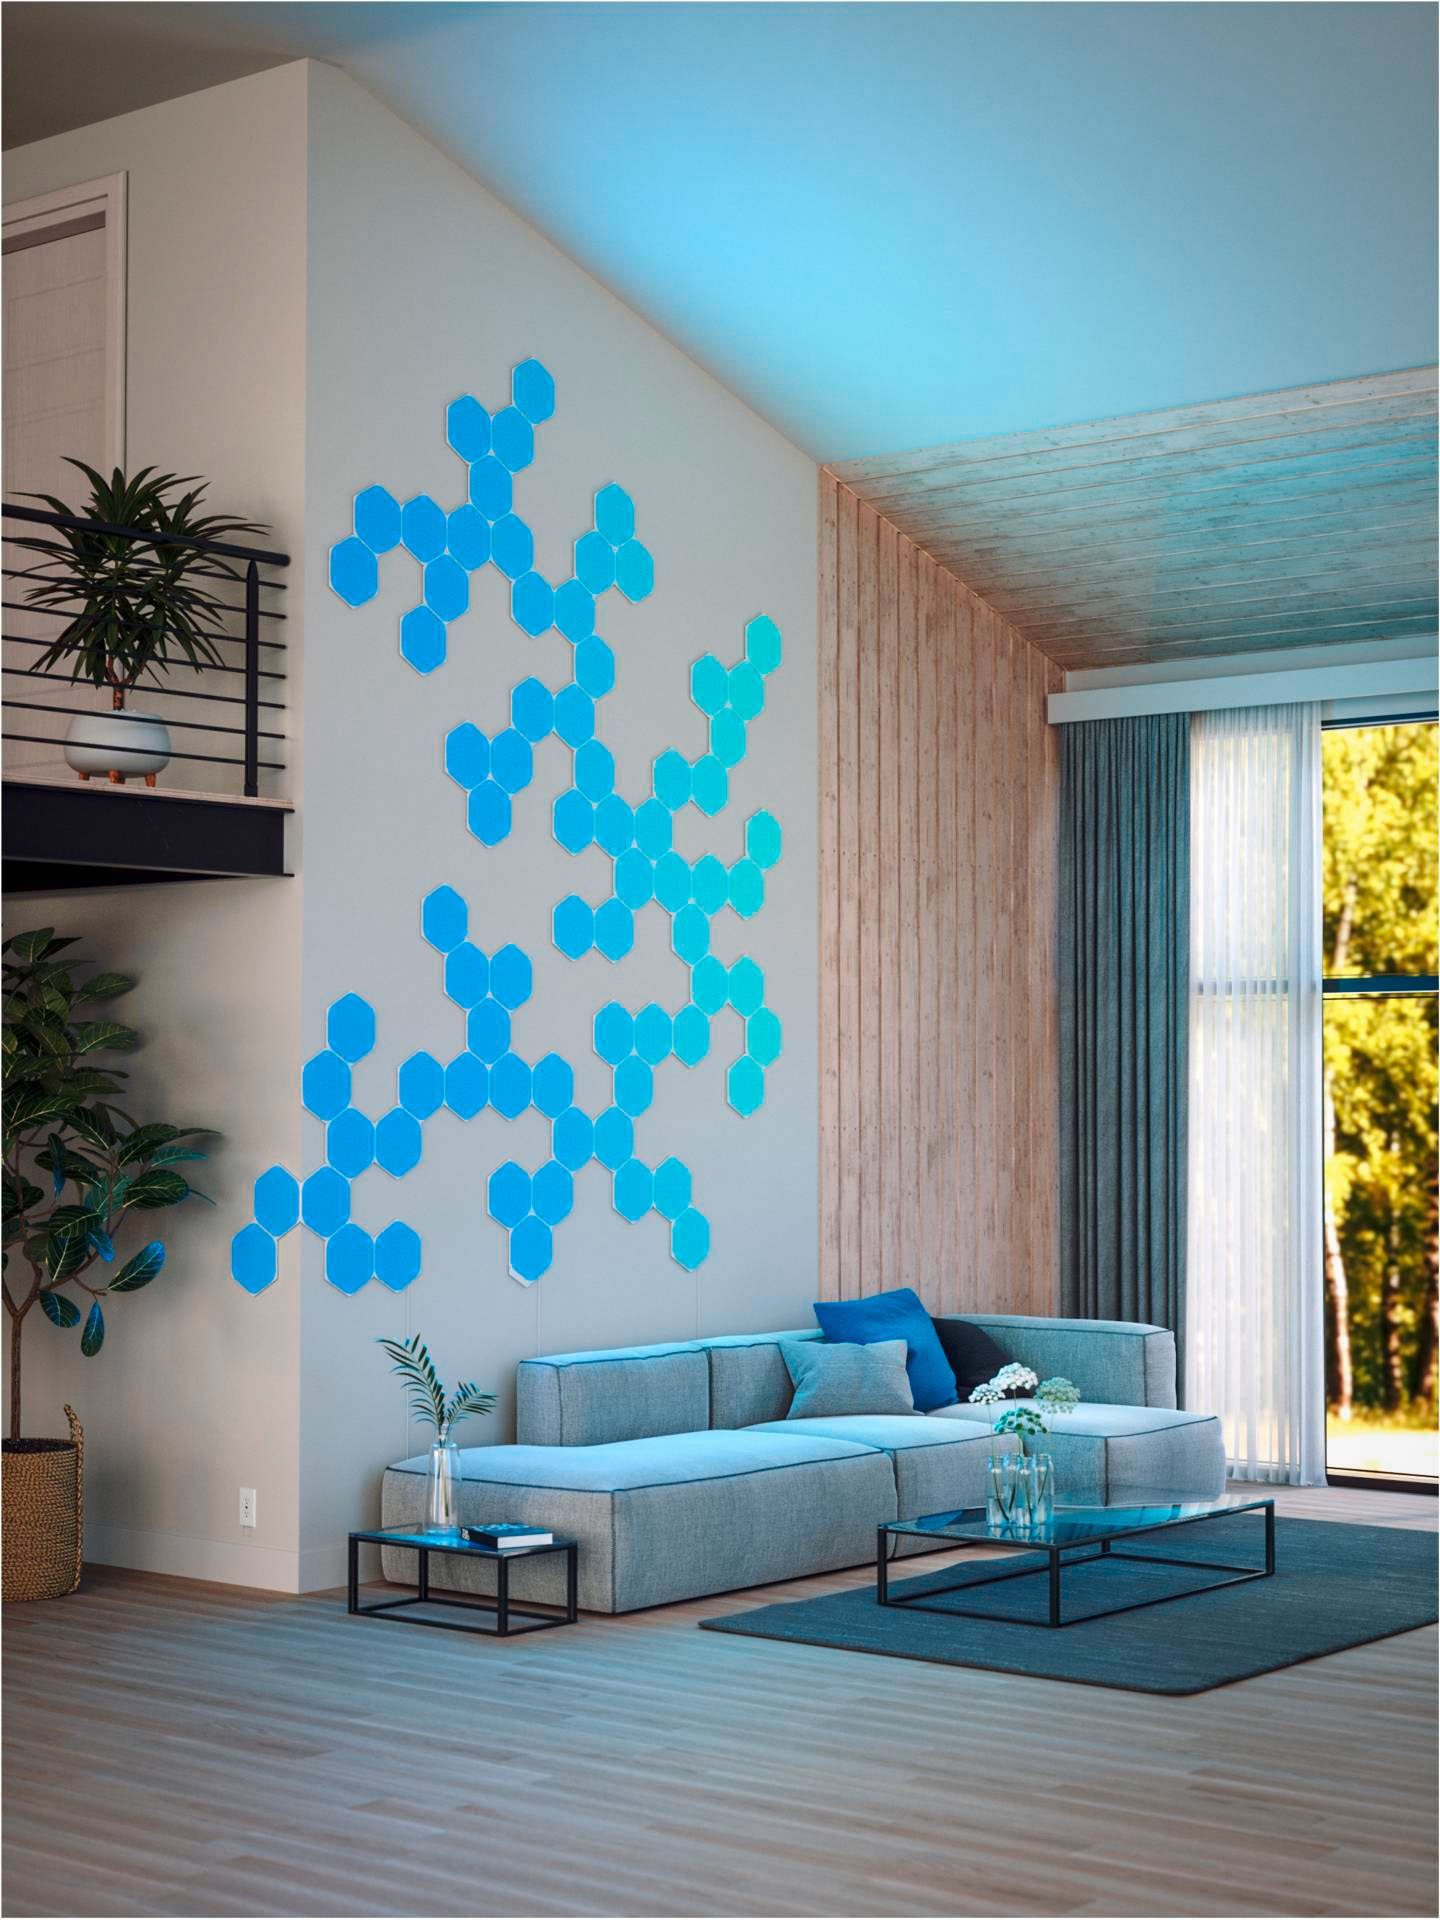 fest Hexagons, Dimmfunktion, LED LED nanoleaf Shapes integriert, Farbwechsler Panel